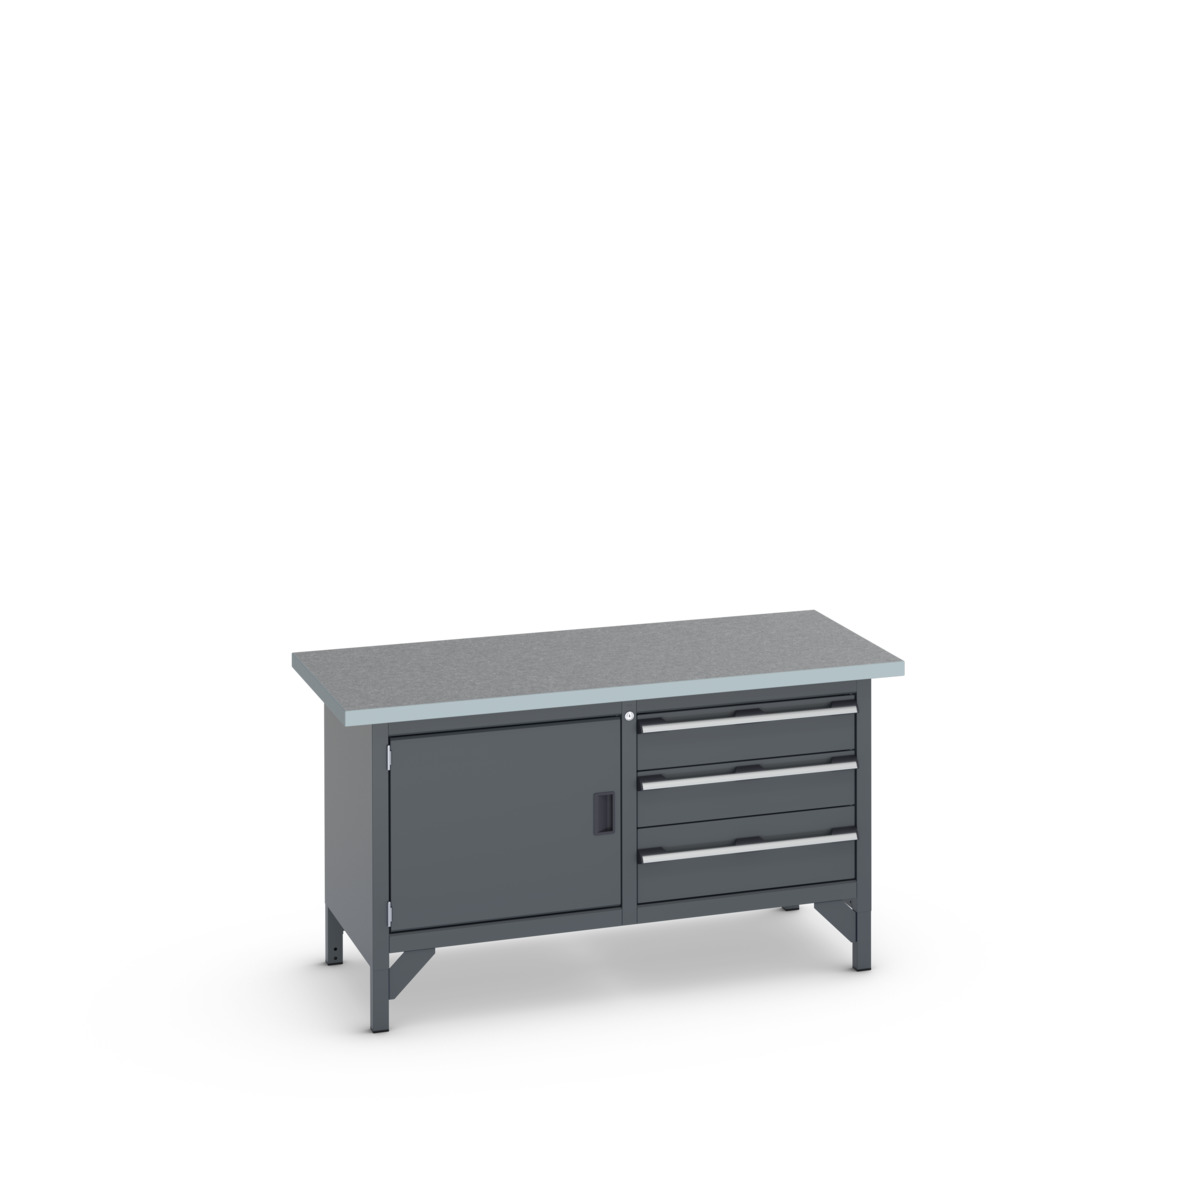 41002027.77V - cubio storage bench (lino)